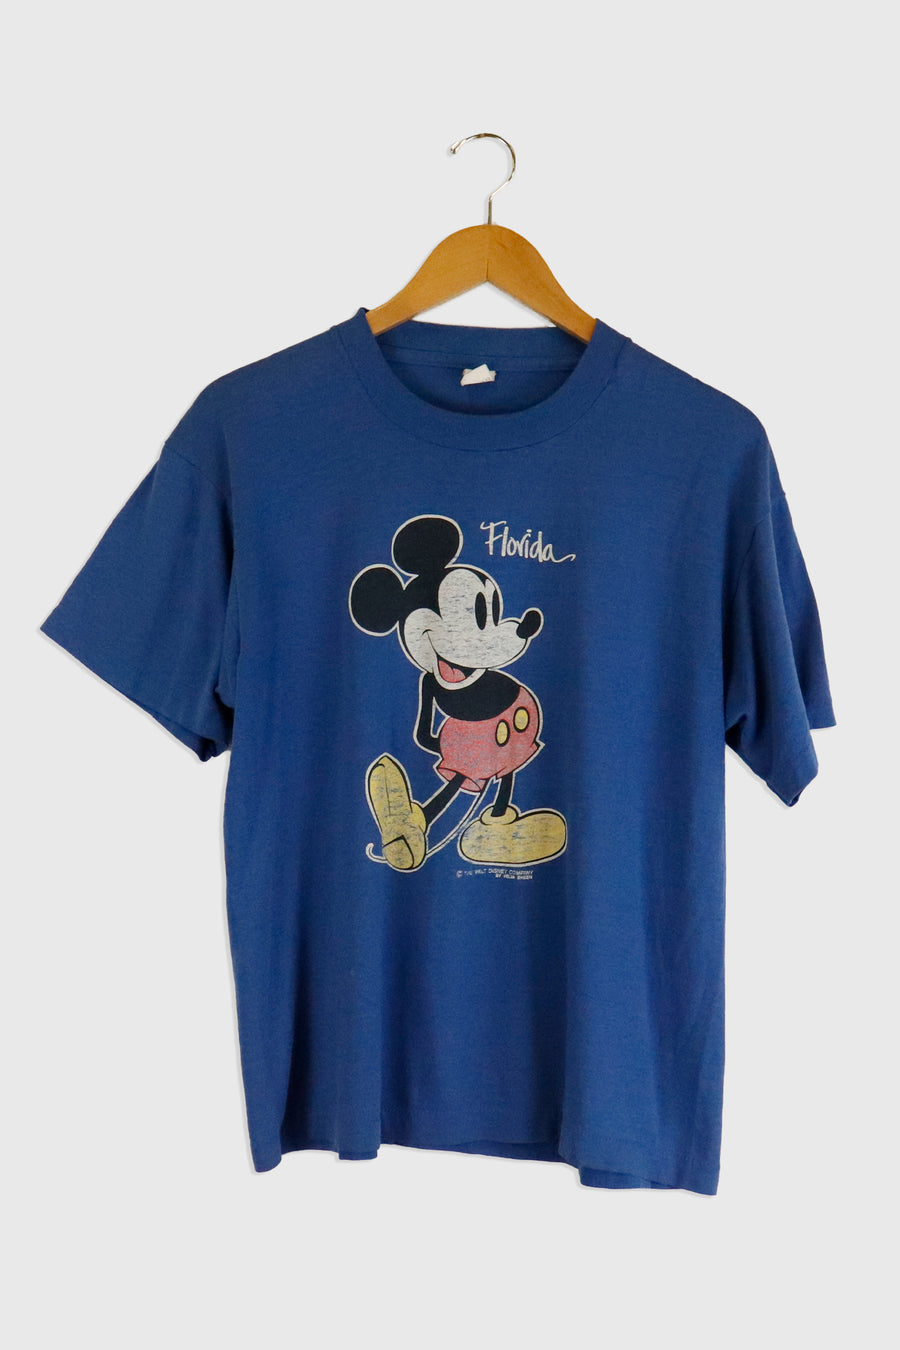 Vintage Florida Mickey Mouse T Shirt Sz L